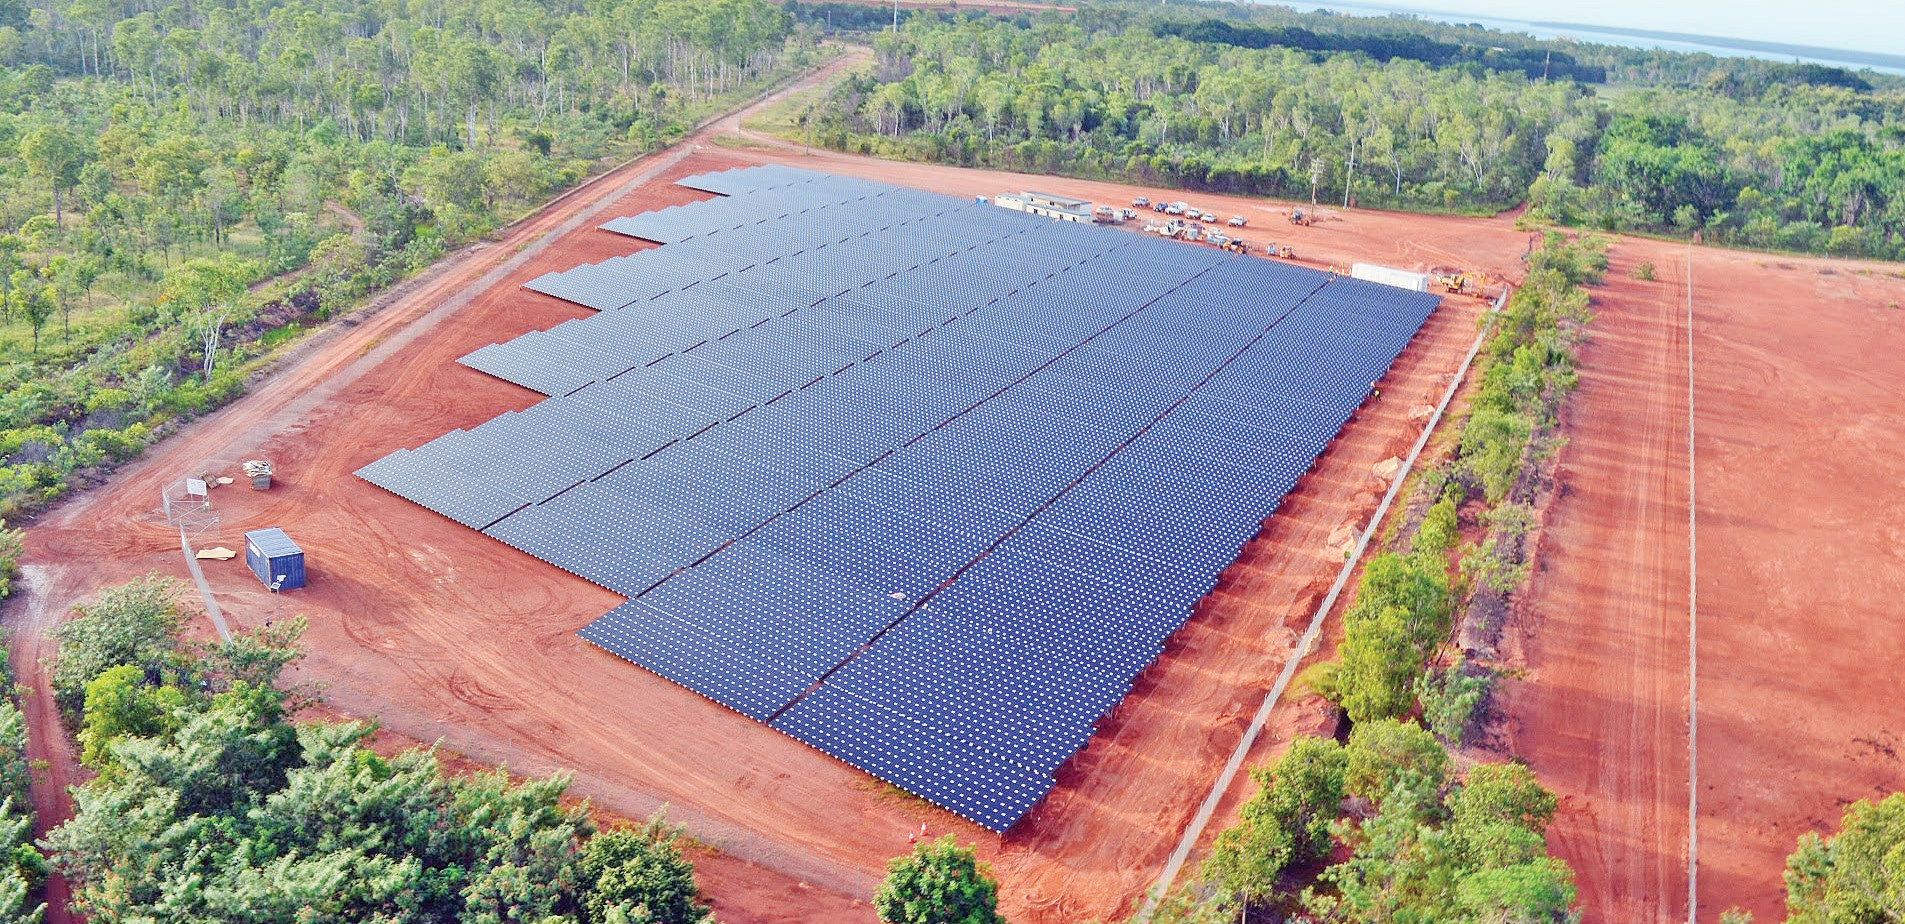 Rio solar farm